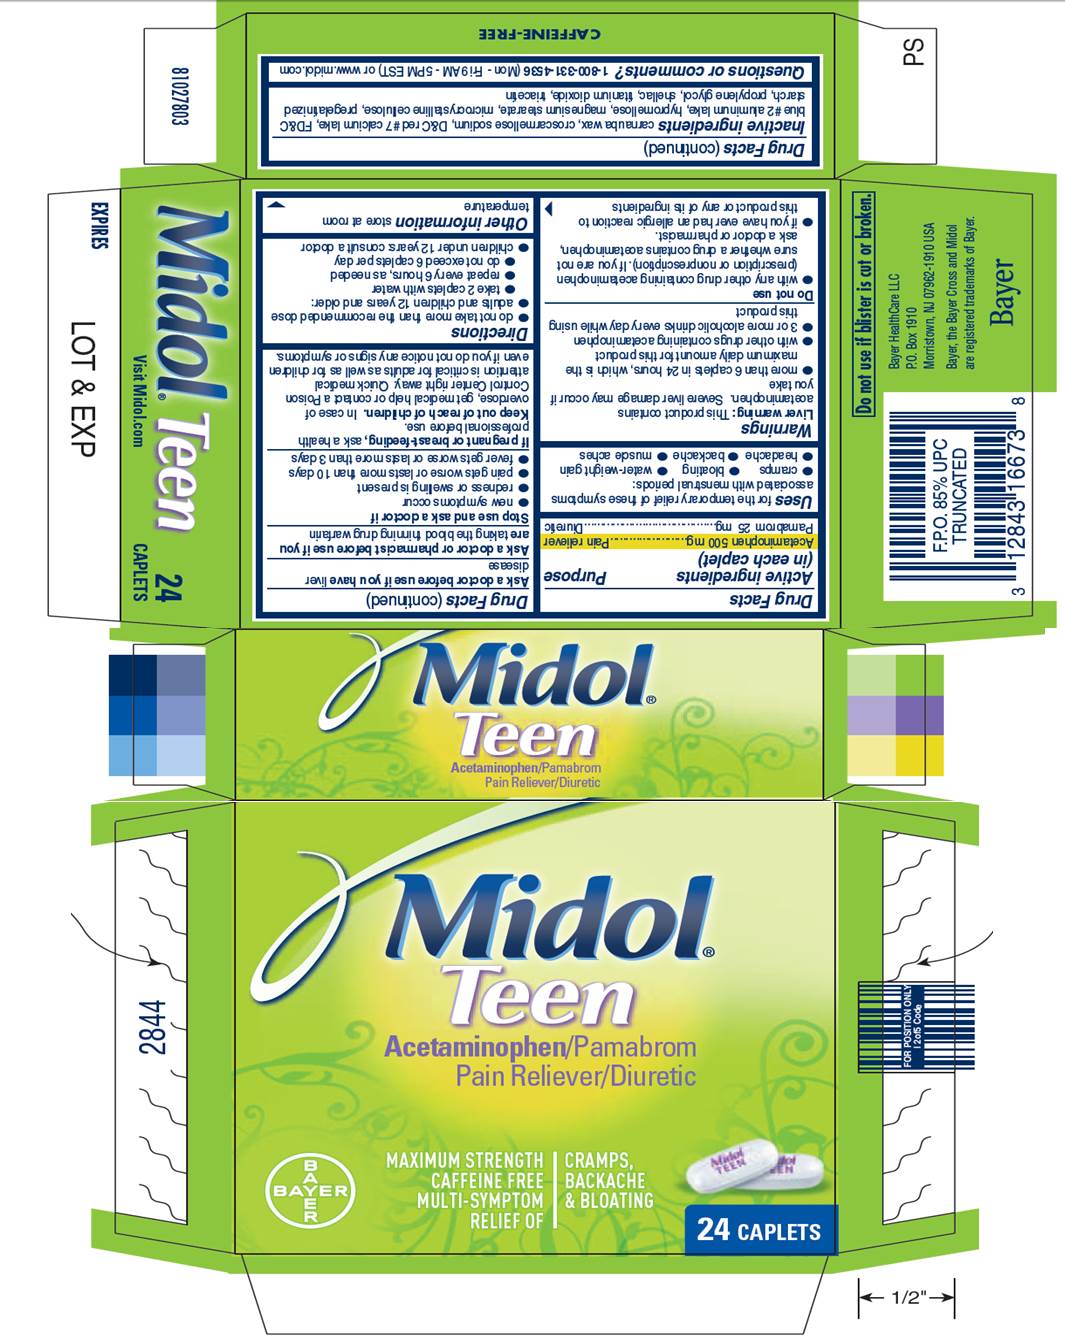 Midol Ingredients